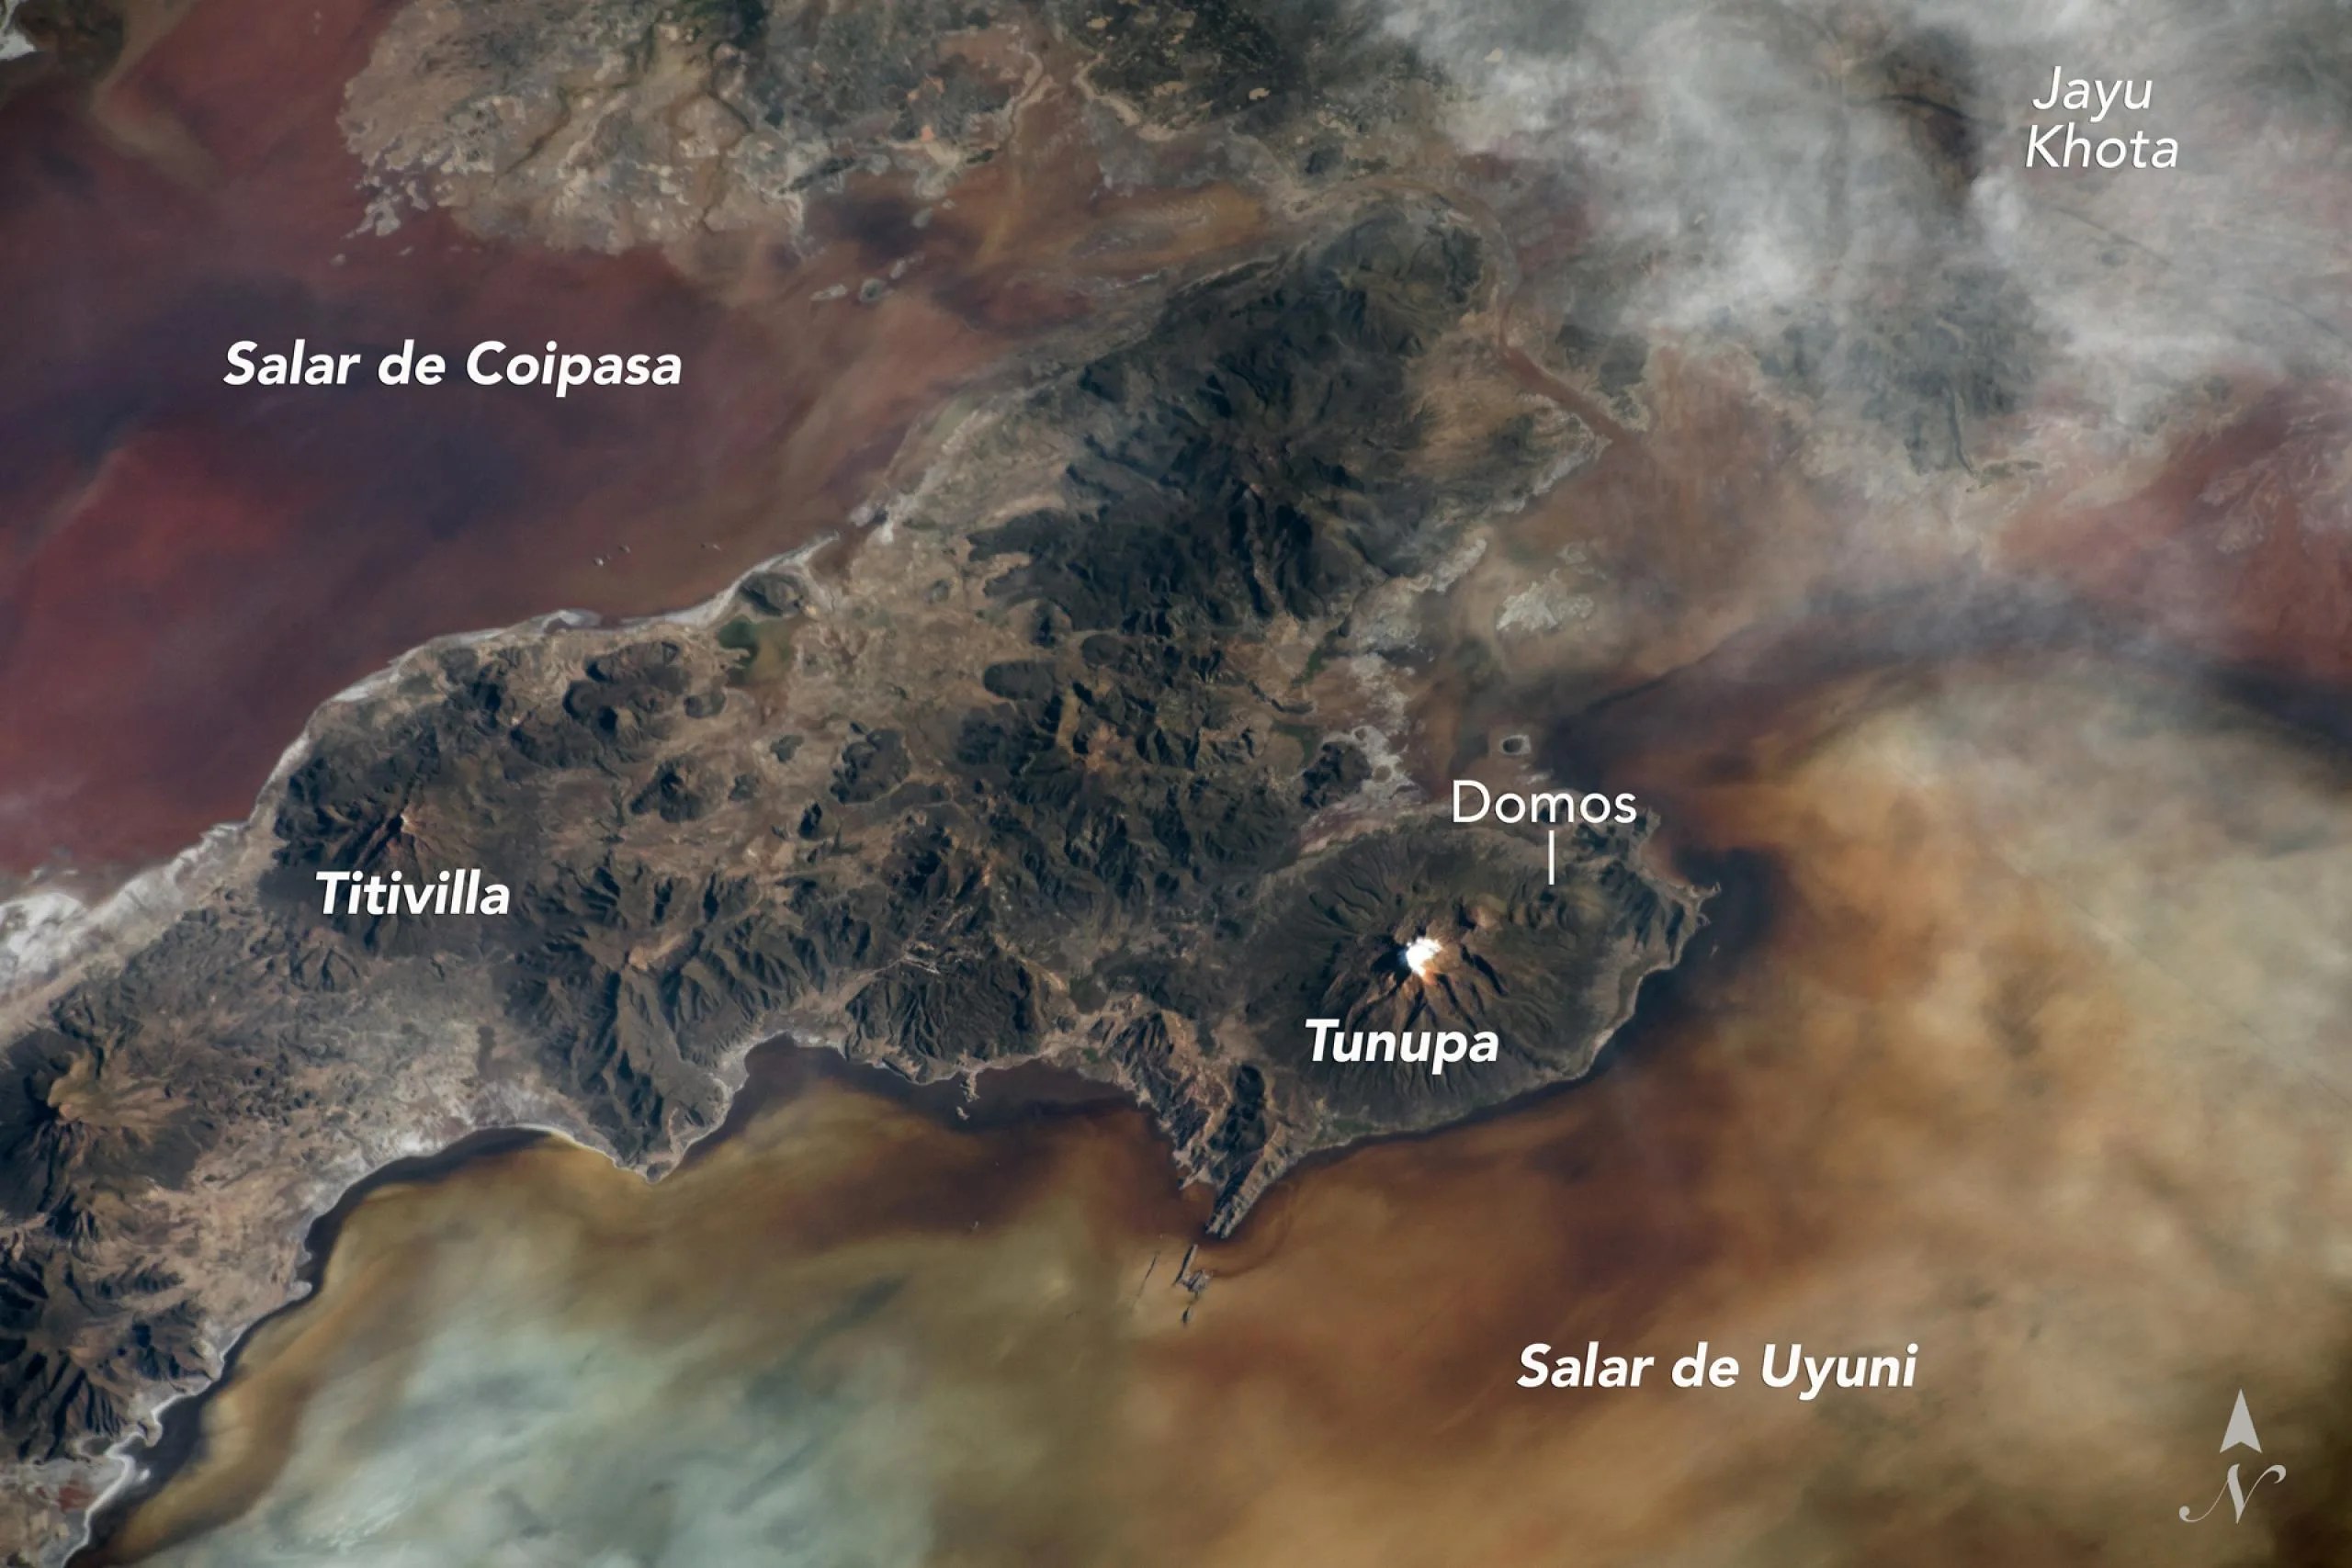 Imagen del volcán Tunupa en Bolivia tomada desde el espacio. La fotografía muestra al volcán situado en una península entre dos de las salinas más grandes de Bolivia, el Salar de Uyuni y el Salar de Coipasa. Estas salinas tienen una cobertura de sedimentos y poblaciones microbianas variables, lo que produce áreas con tonos más oscuros y más claros en la superficie. Se observan los flancos del cono del volcán cortados por valles que fueron erosionados por antiguos glaciares y flujos de corrientes. Los domos